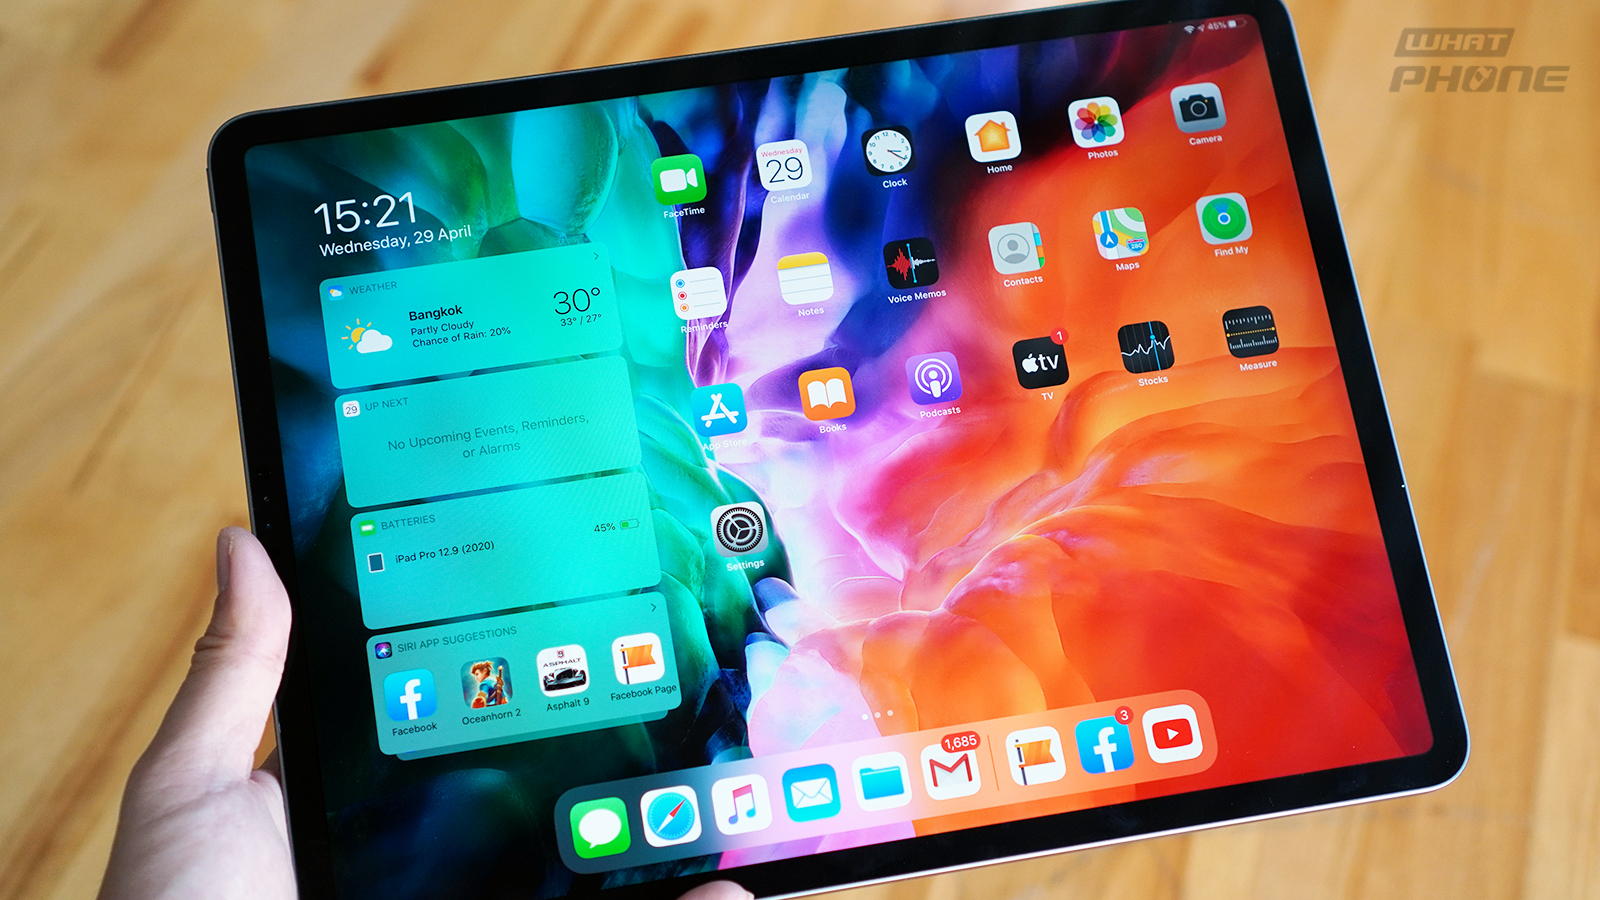 รีวิว iPad Pro รุ่น 12.9 นิ้ว ปี 2020 หน้าจอคมชัด ลื่นไหล มาพร้อมกล้องคู่ ประสิทธิภาพสุดแรง